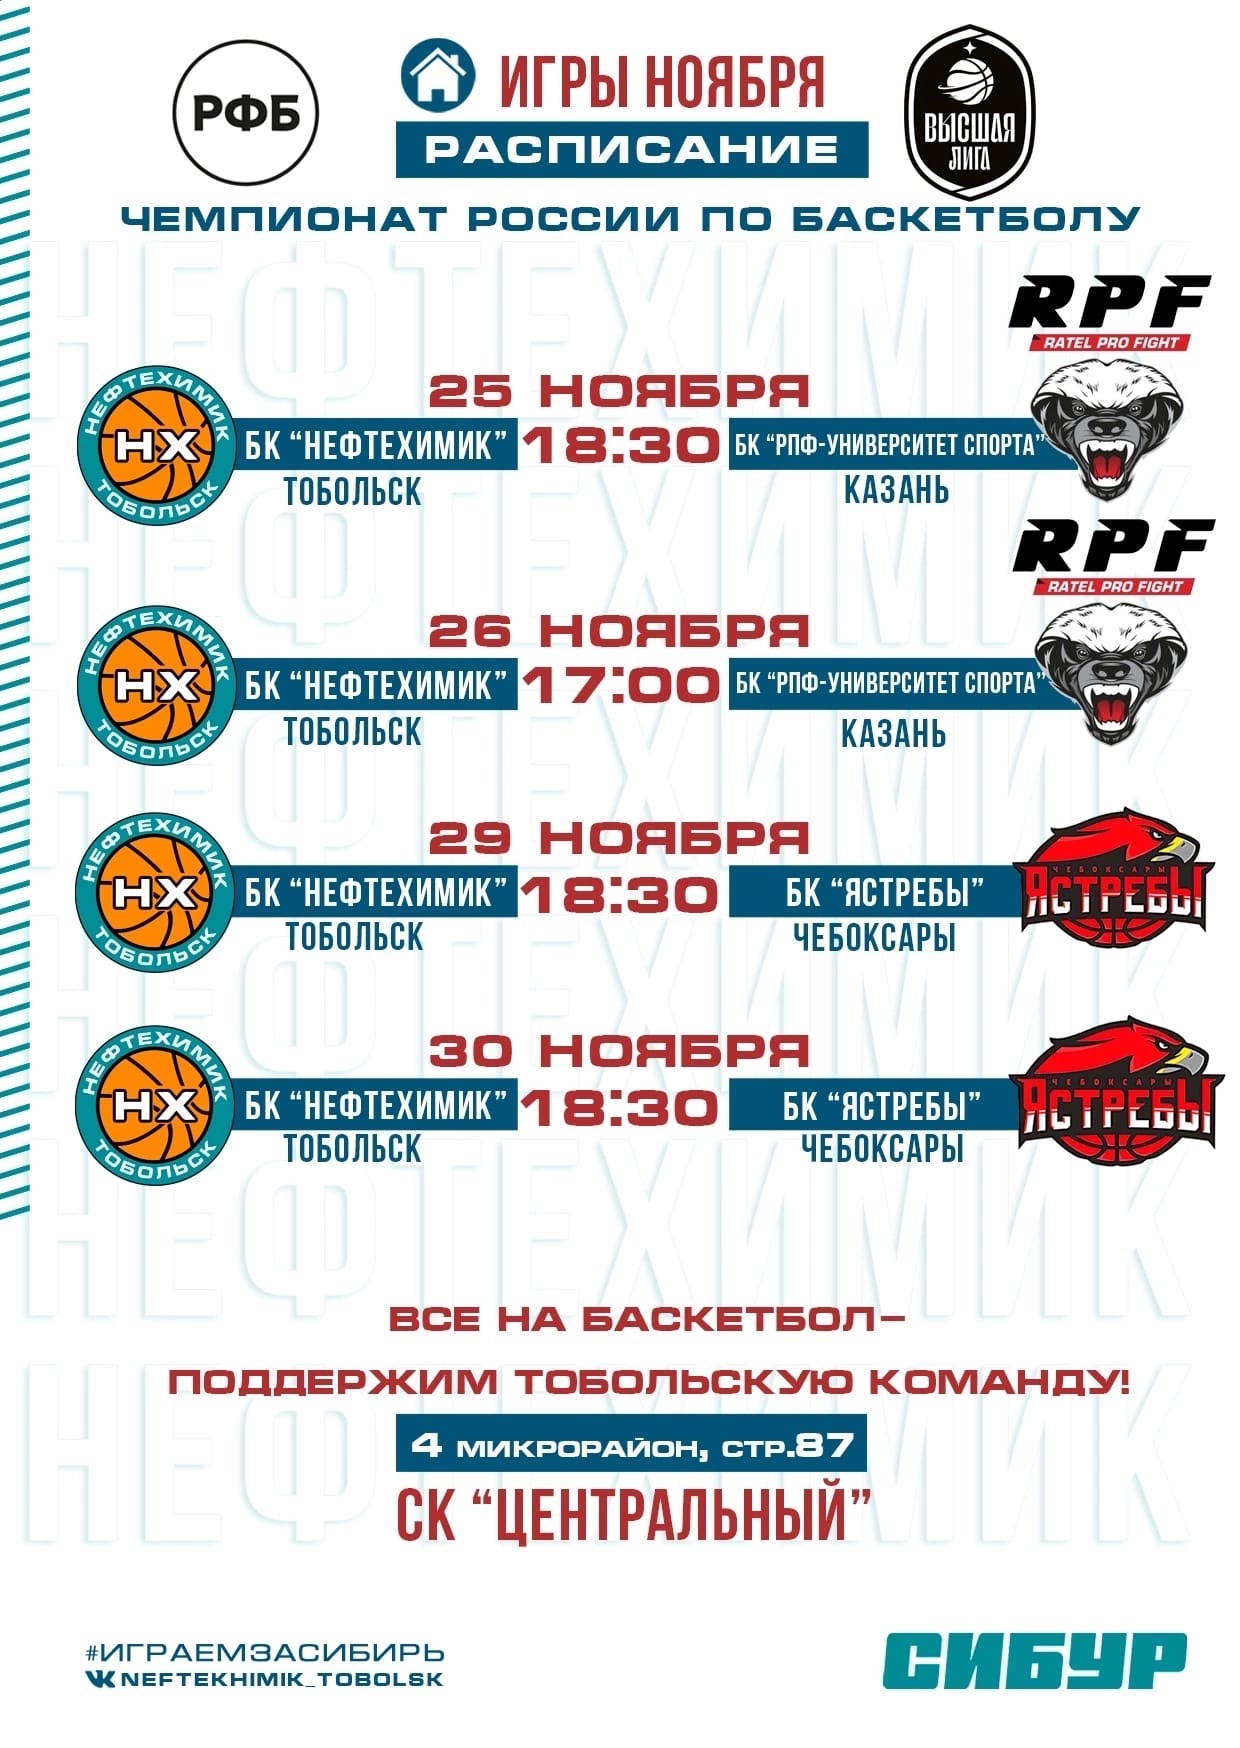 Чемпионат России по баскетболу: болеем за БК «Нефтехимик»